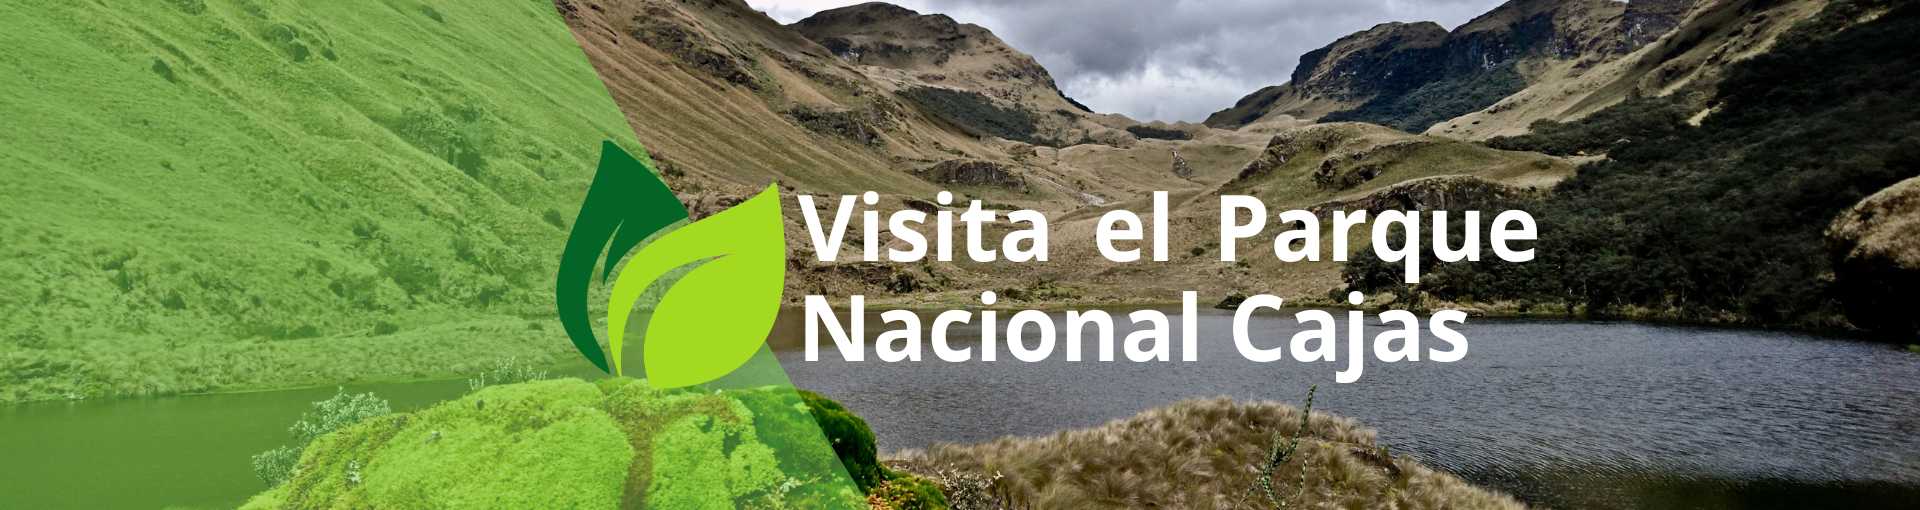 Visita el Parque Nacional Cajas